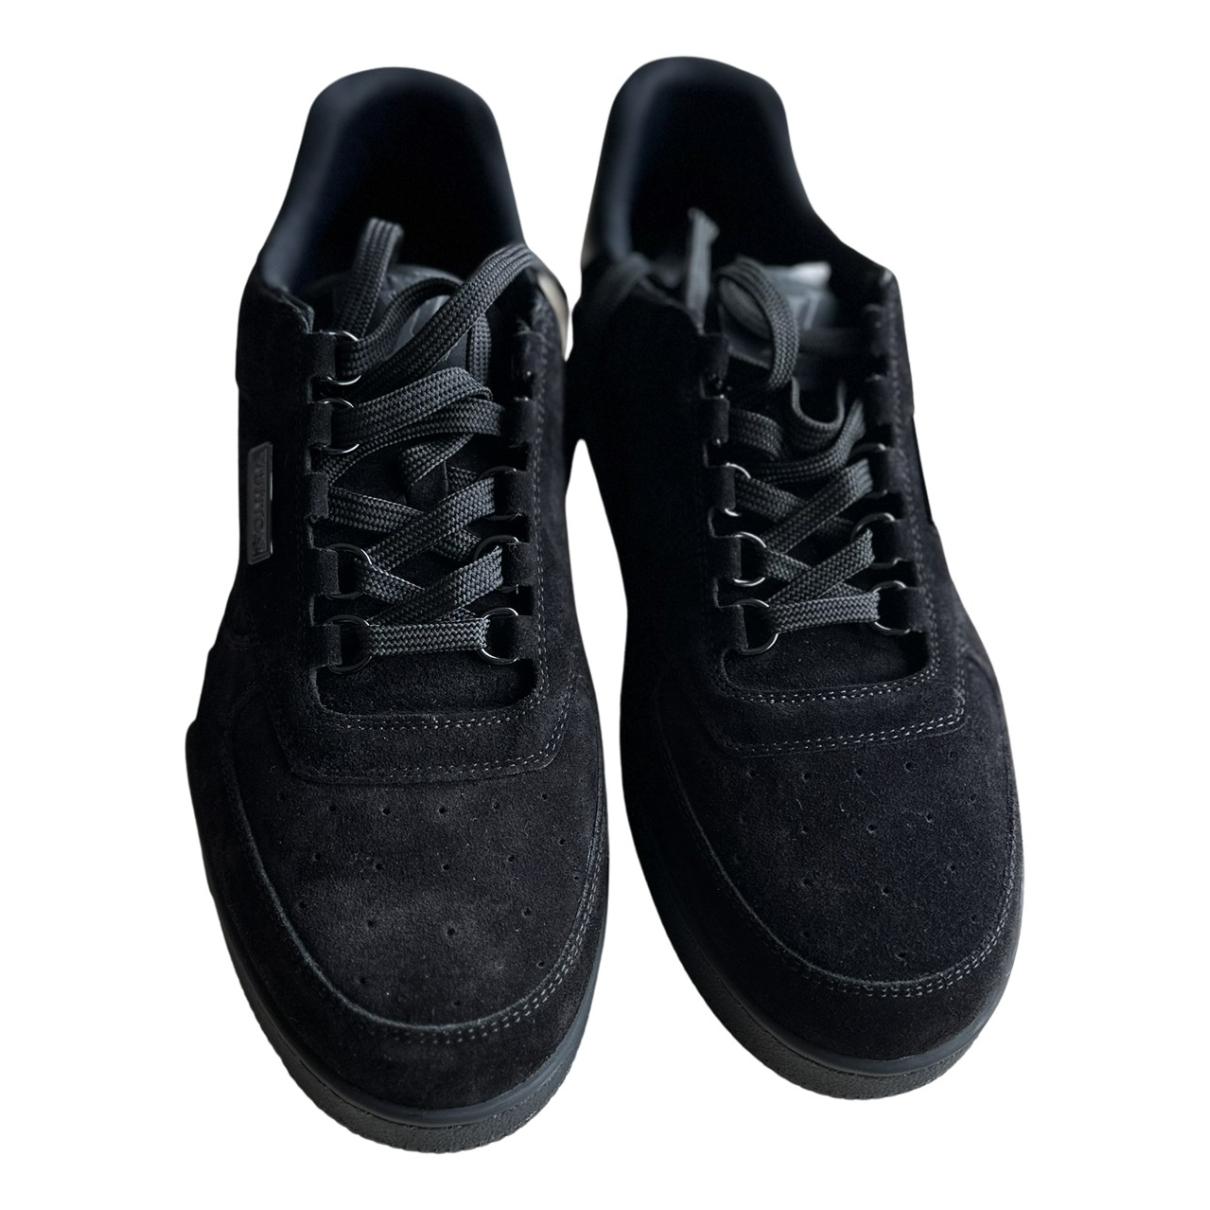 Size 9 (US 10.5 Men's)- Louis Vuitton LV Trainer Black - 1A8PUA